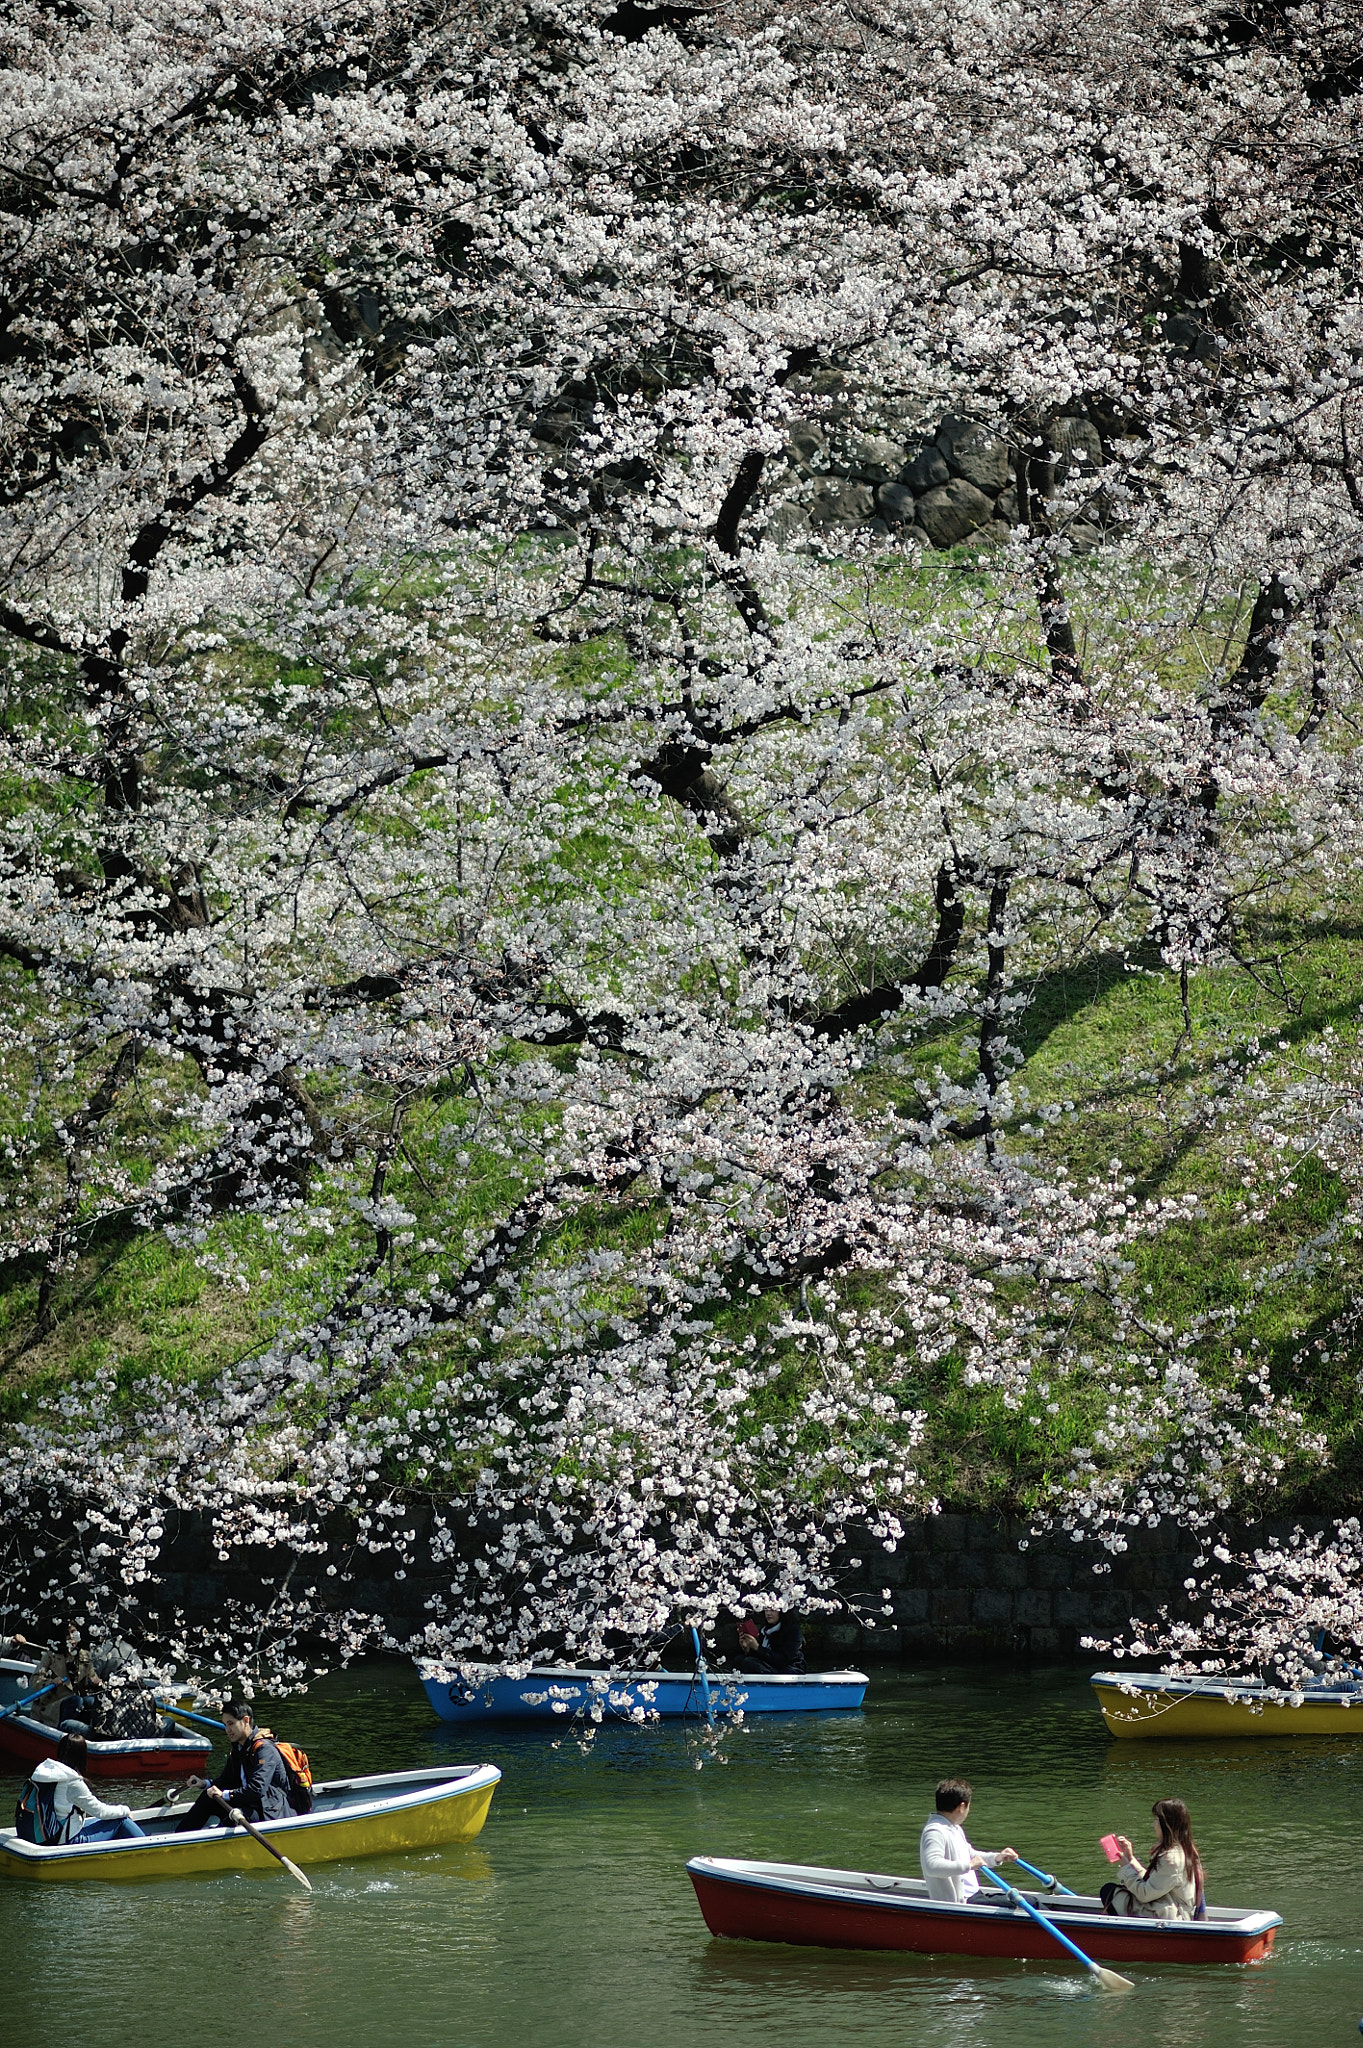 AF DC-Nikkor 135mm f/2D sample photo. Spring for tokyoites photography